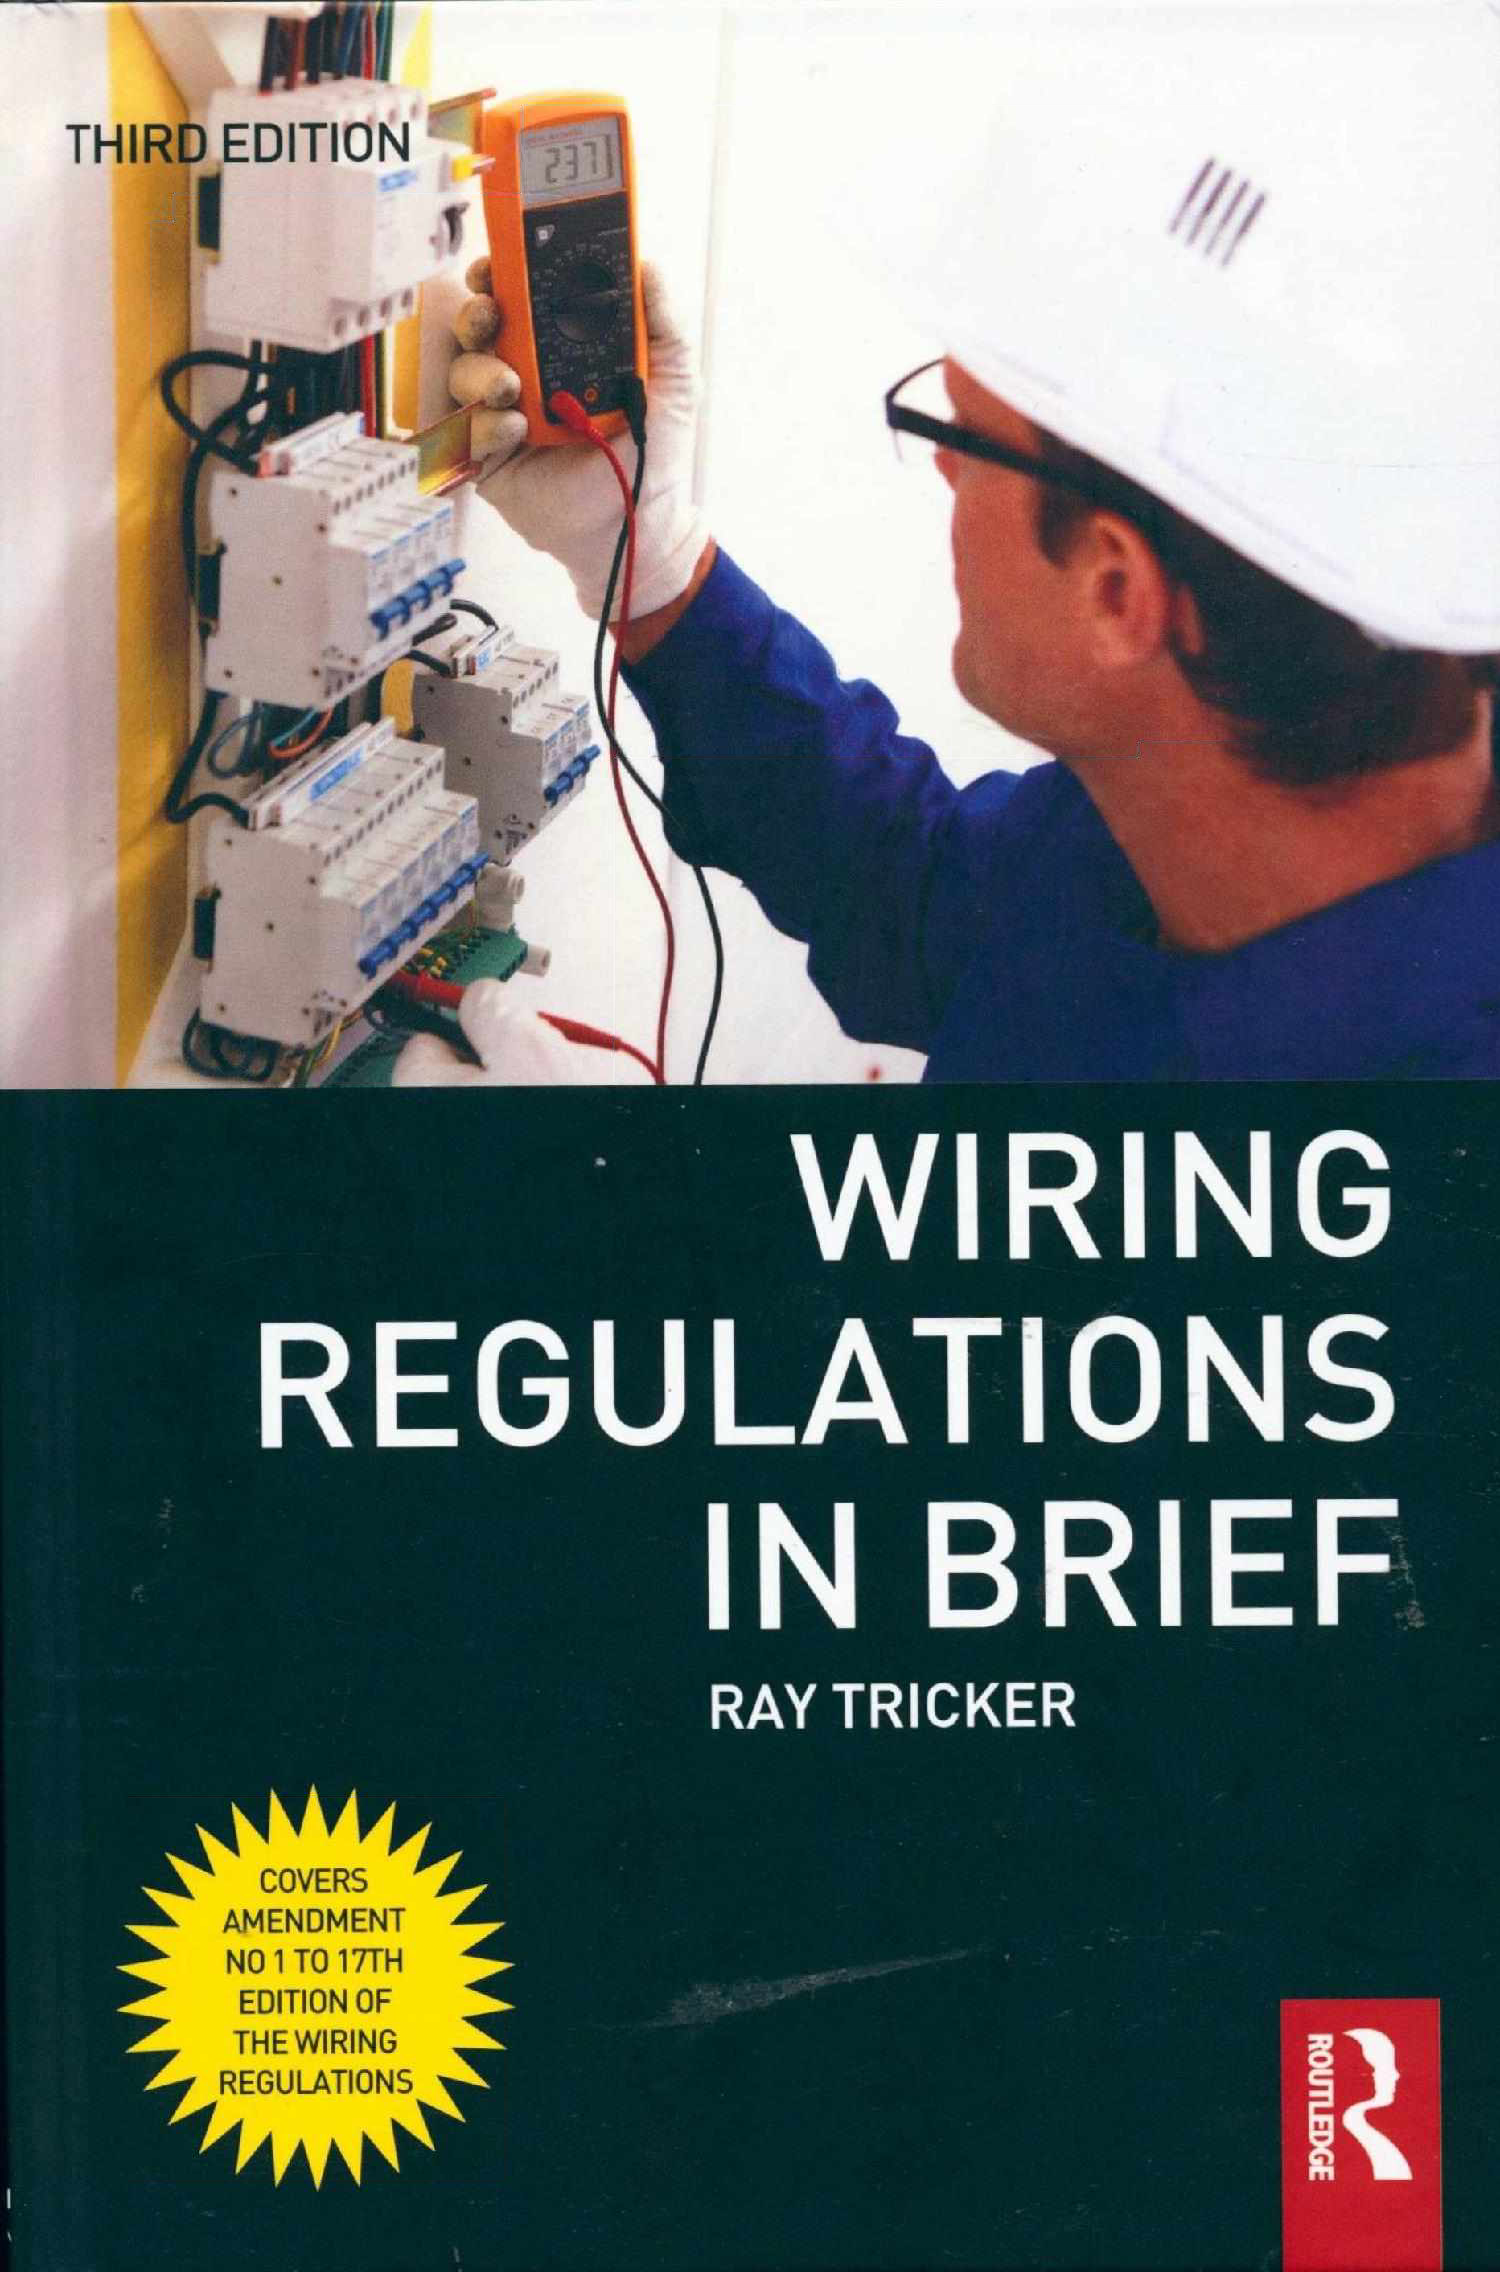 Wiring regulations in brief